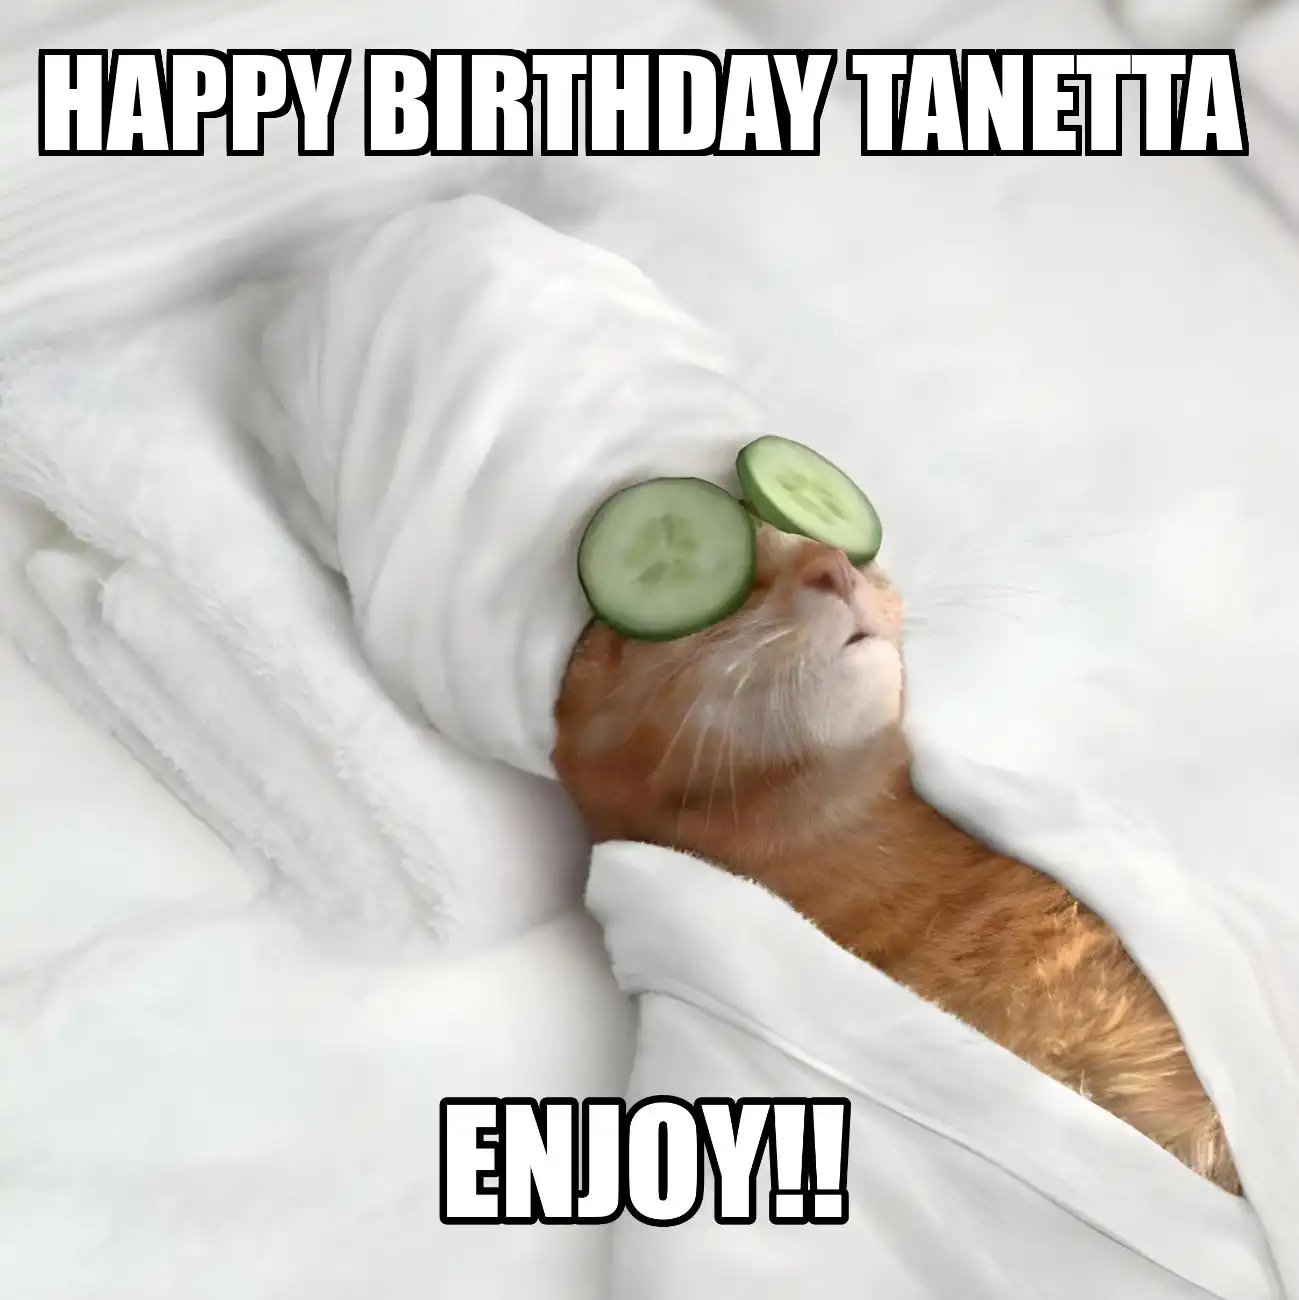 Happy Birthday Tanetta Enjoy Cat Meme